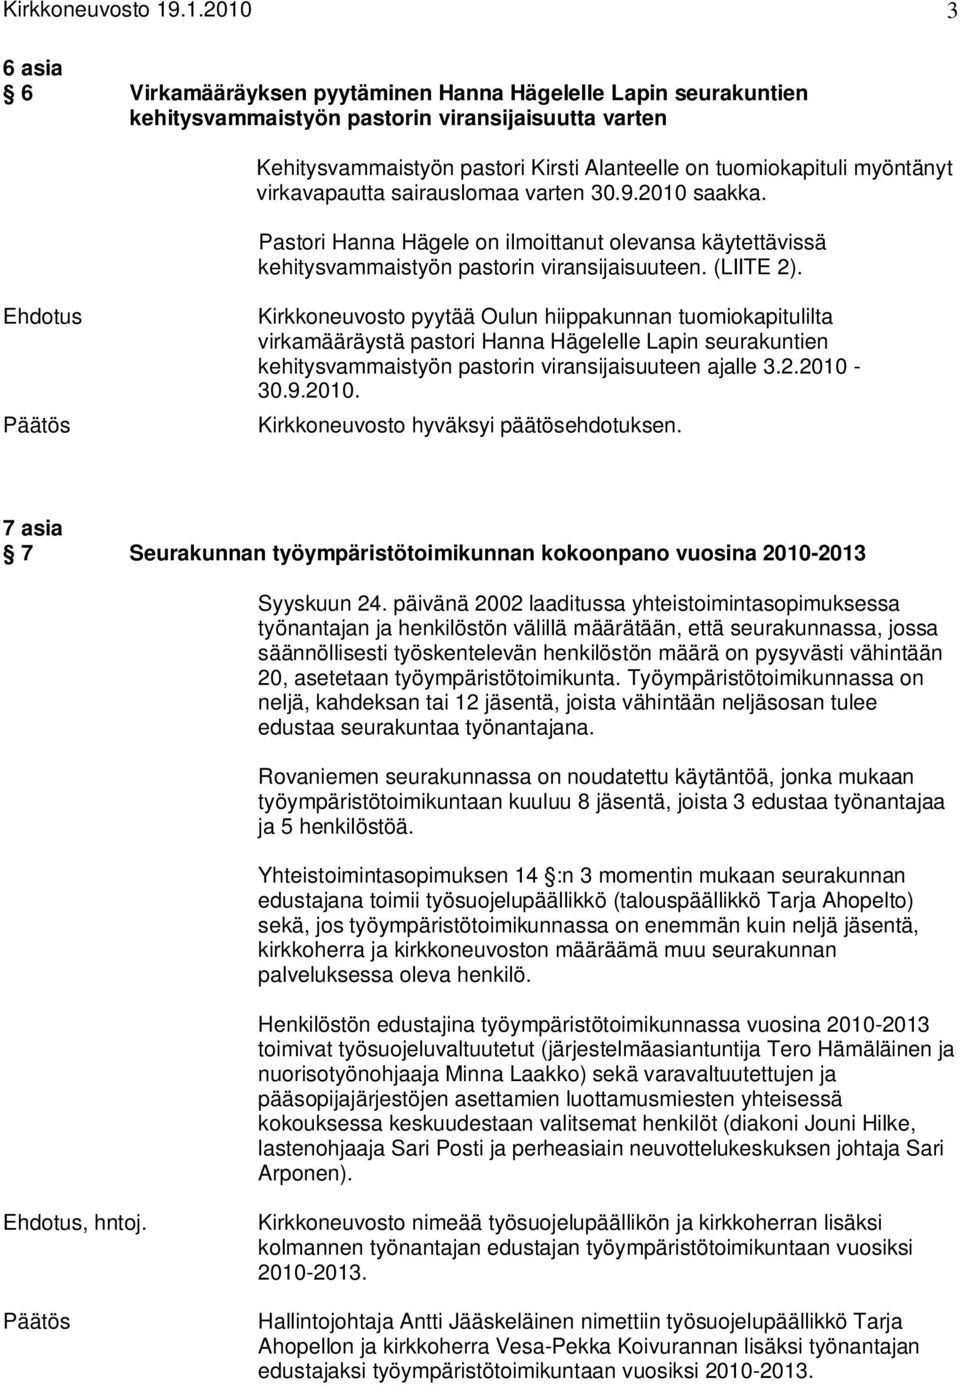 Ehdotus Kirkkoneuvosto pyytää Oulun hiippakunnan tuomiokapitulilta virkamääräystä pastori Hanna Hägelelle Lapin seurakuntien kehitysvammaistyön pastorin viransijaisuuteen ajalle 3.2.2010-